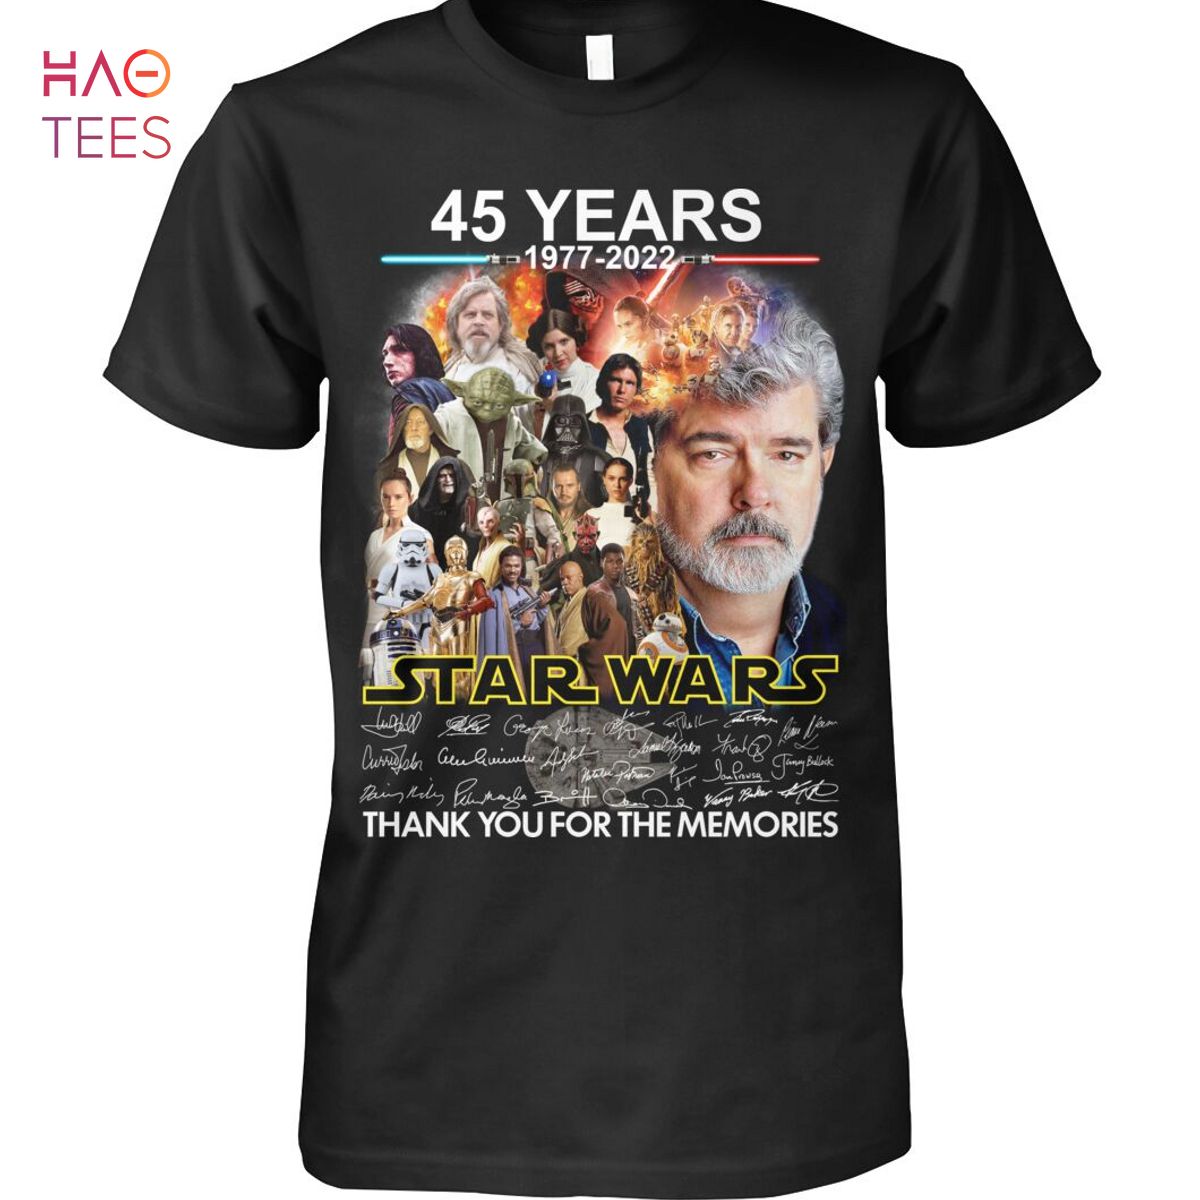 45 Years 1977-2022 Star Wars Shirt